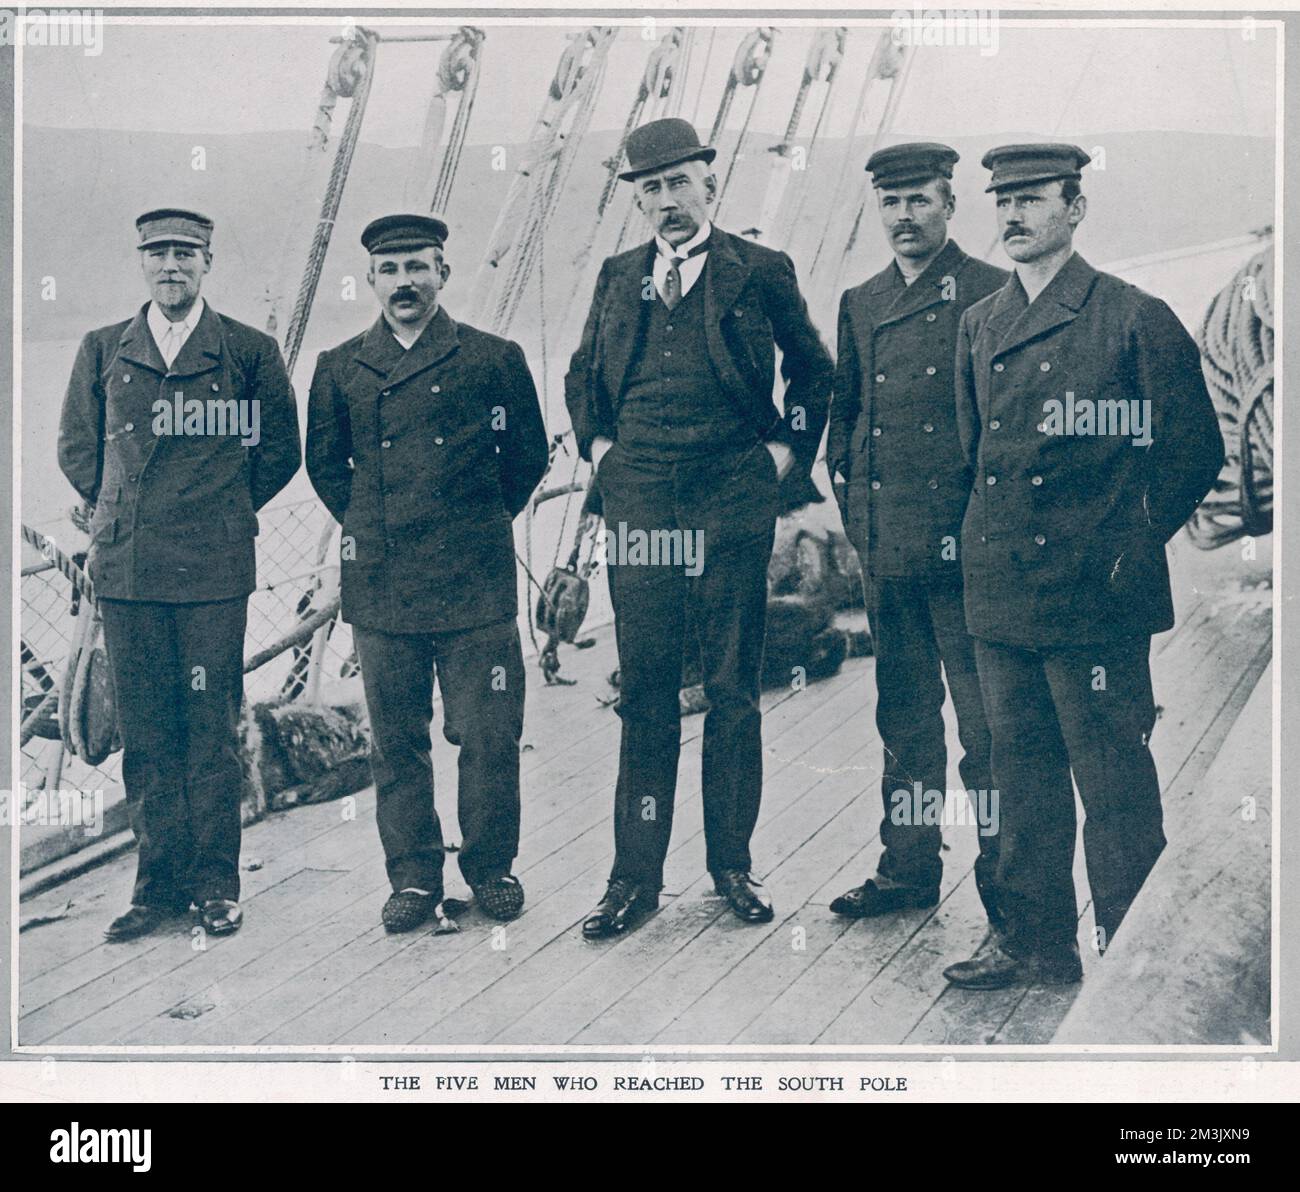 Die ersten Männer erreichen den Südpol; von links nach rechts: Sverre Hassel, Oscar Wisting, Roald Amundsen, Olaf Bjaalund und Helmer Hansen. Dieses Bild zeigt die Entdecker an Bord des Expeditionsschiffs „Fram“ in Hobart, Tasmanien. Datum: 1912 Stockfoto